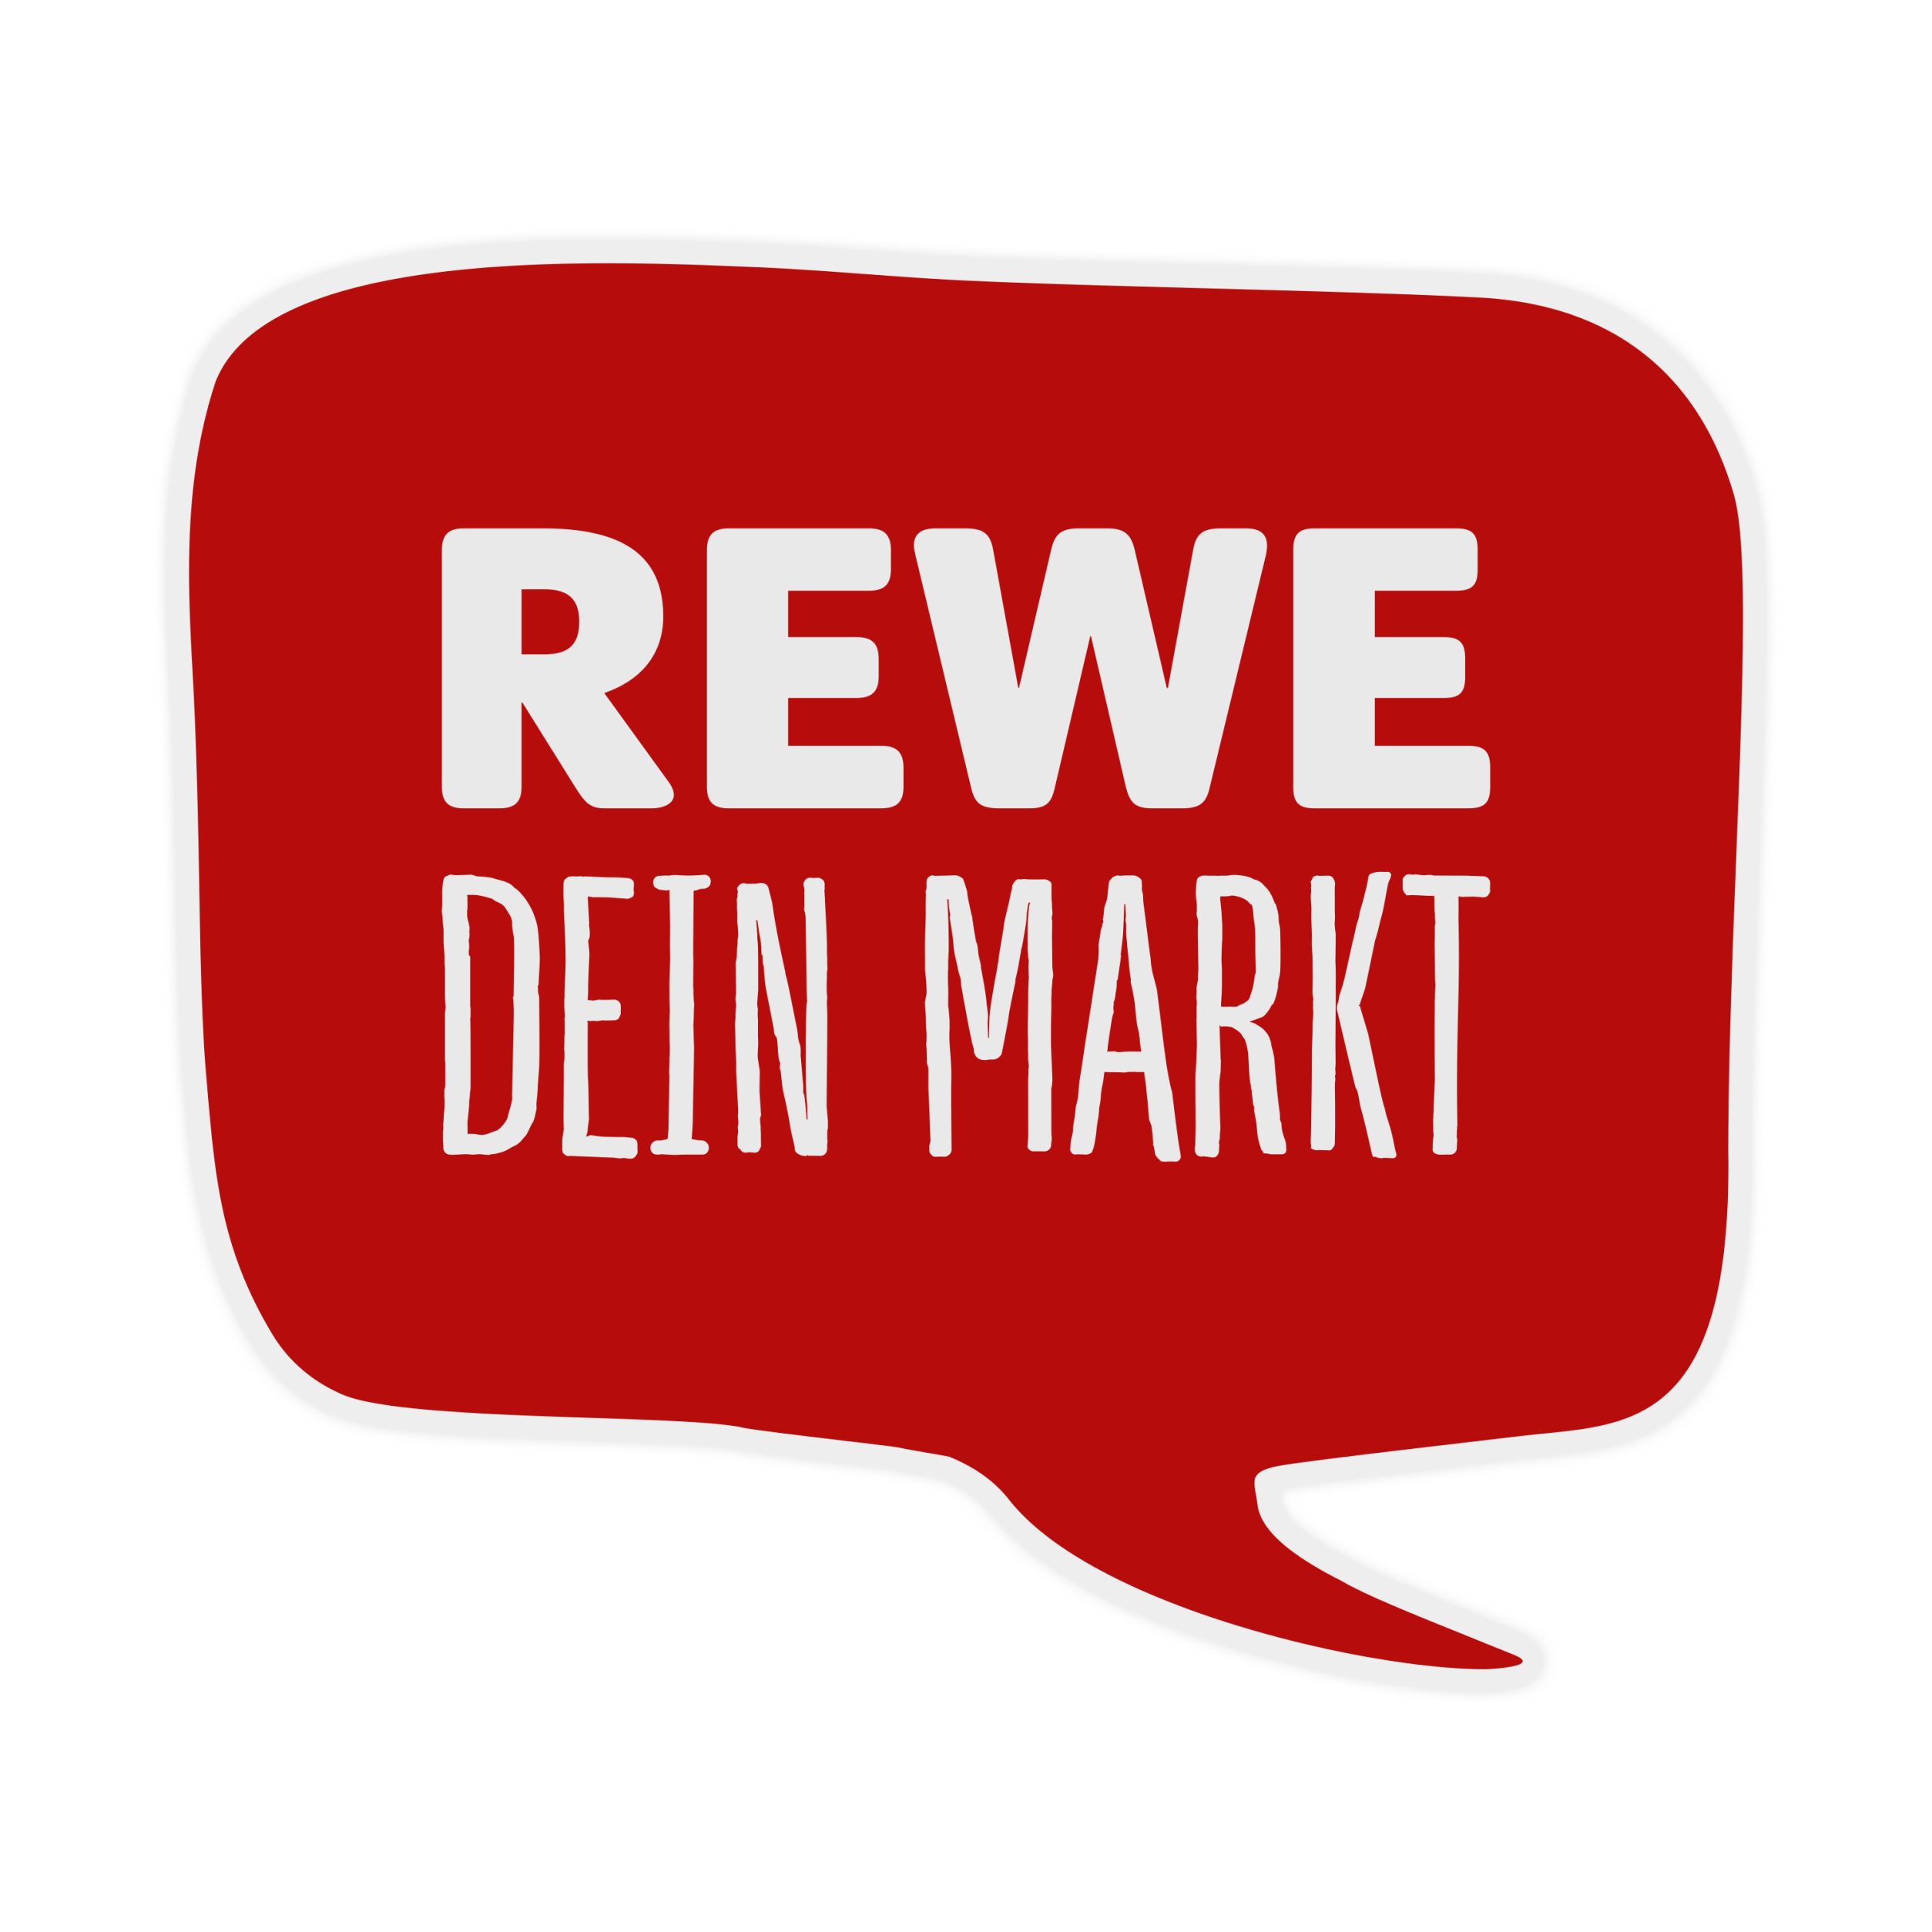 REWE Genschel